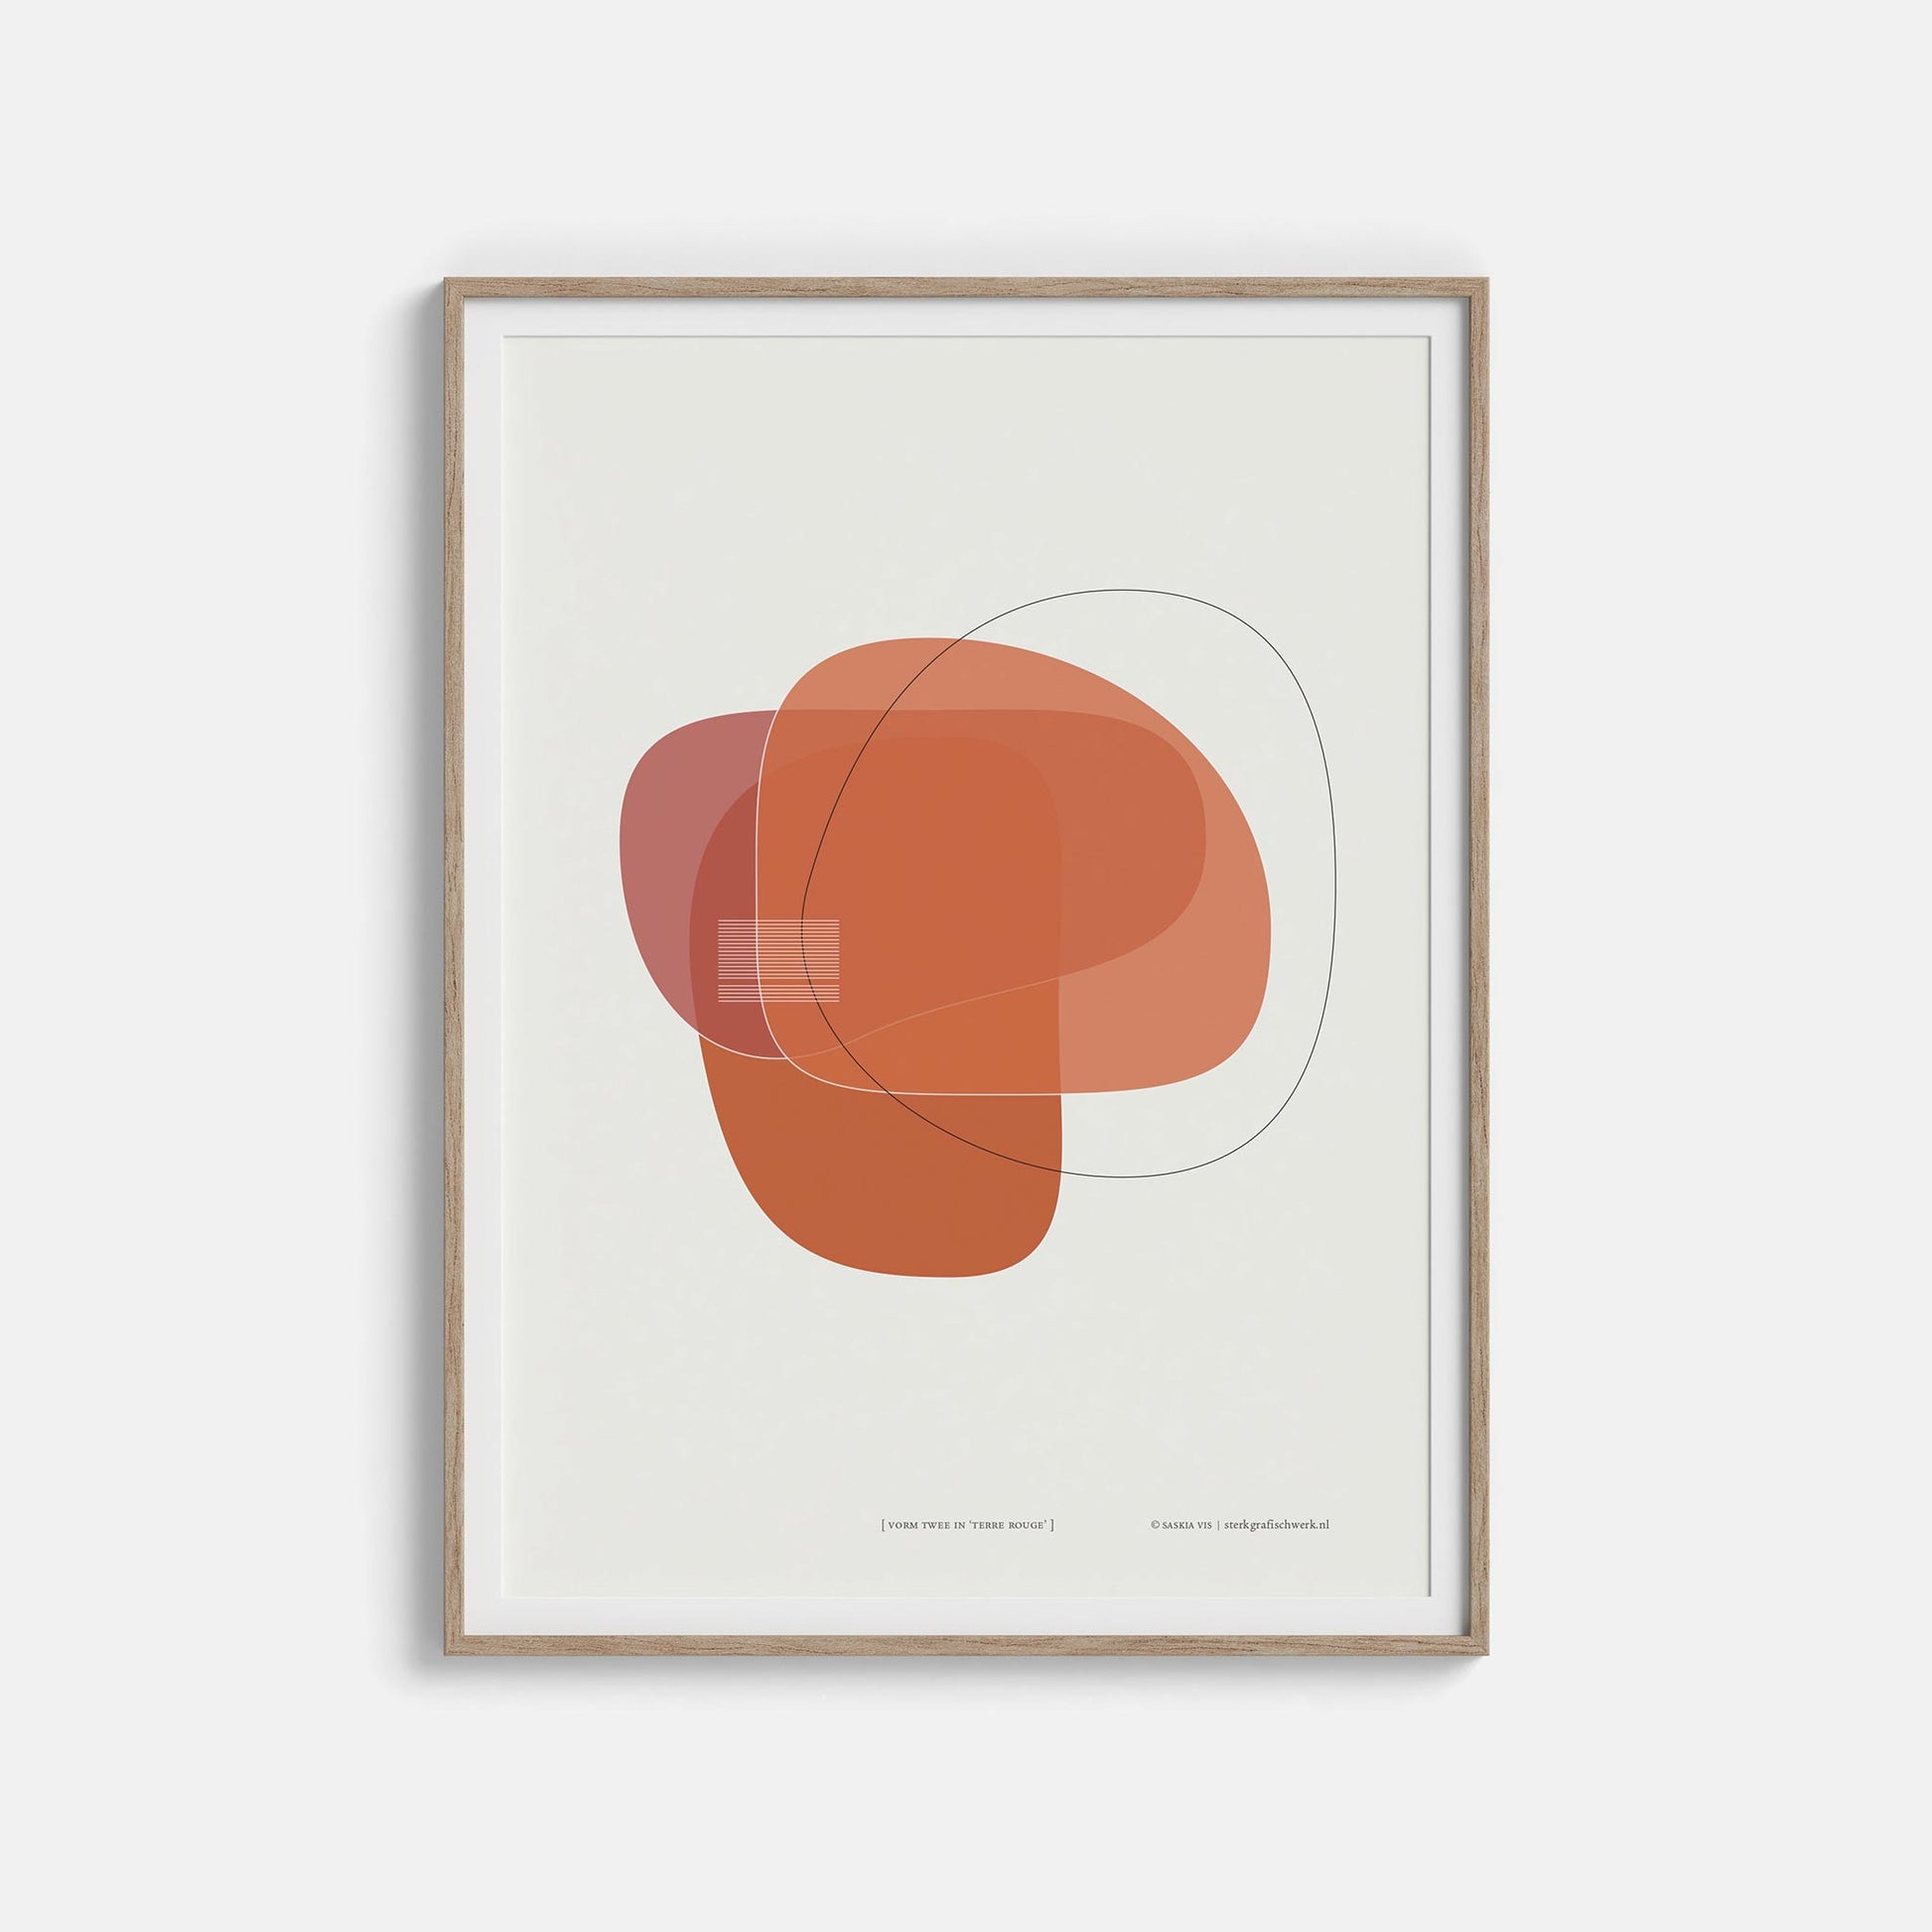 Productafbeelding poster "vorm twee in terre rouge" 2de impressie ingelijst hangend aan een witte muur